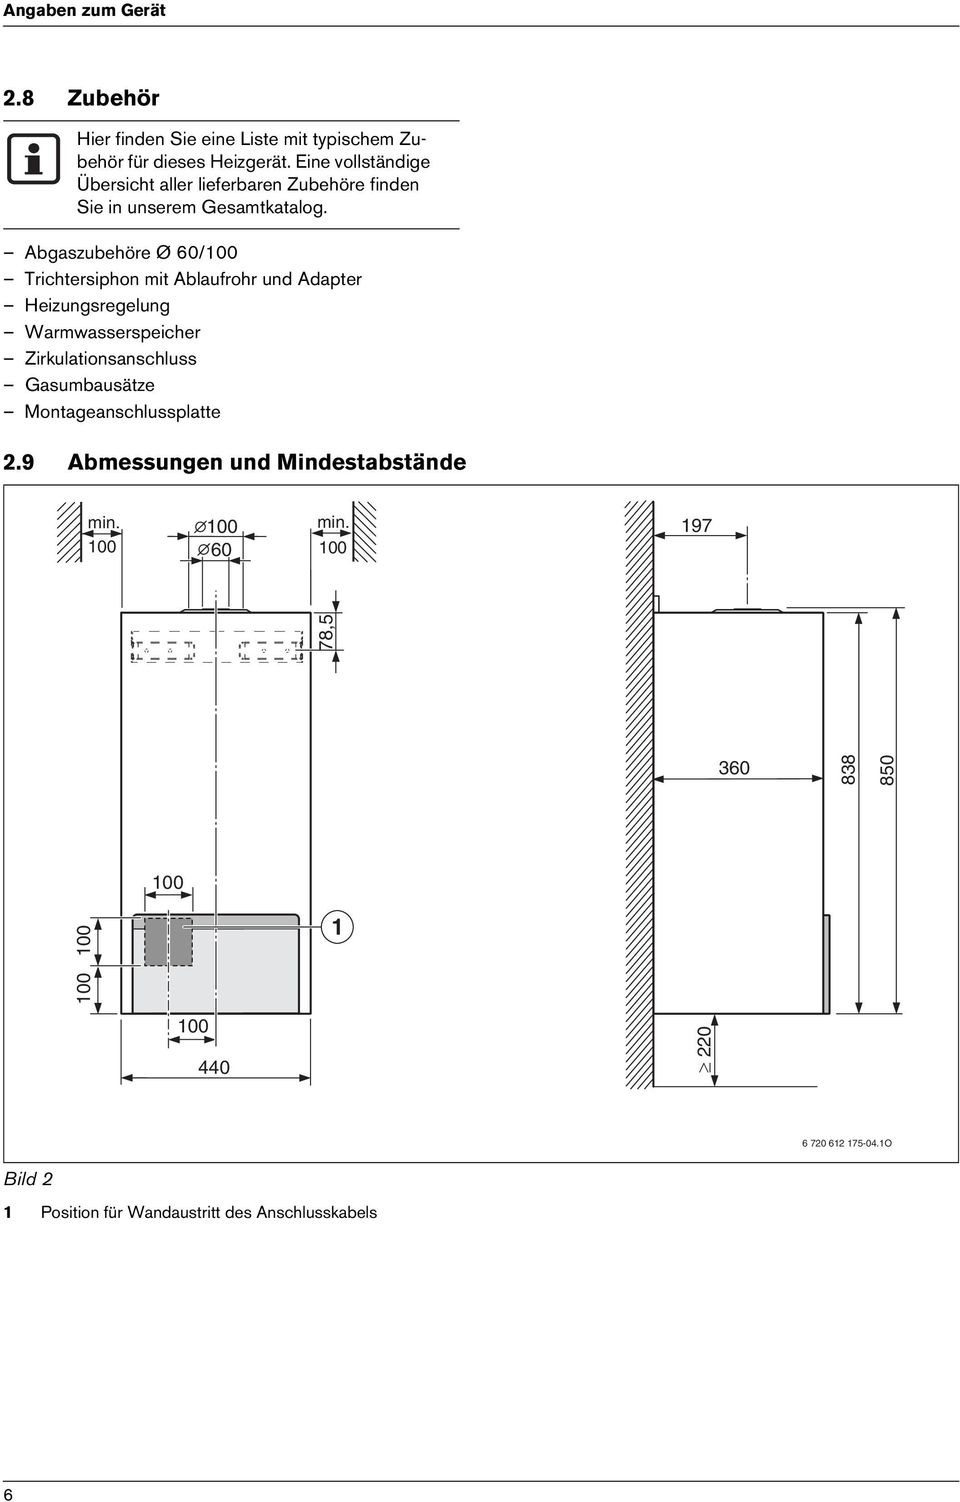 Abgaszubehöre Ø /100 Trichtersiphon mit Ablaufrohr und Adapter Heizungsregelung Warmwasserspeicher Zirkulationsanschluss